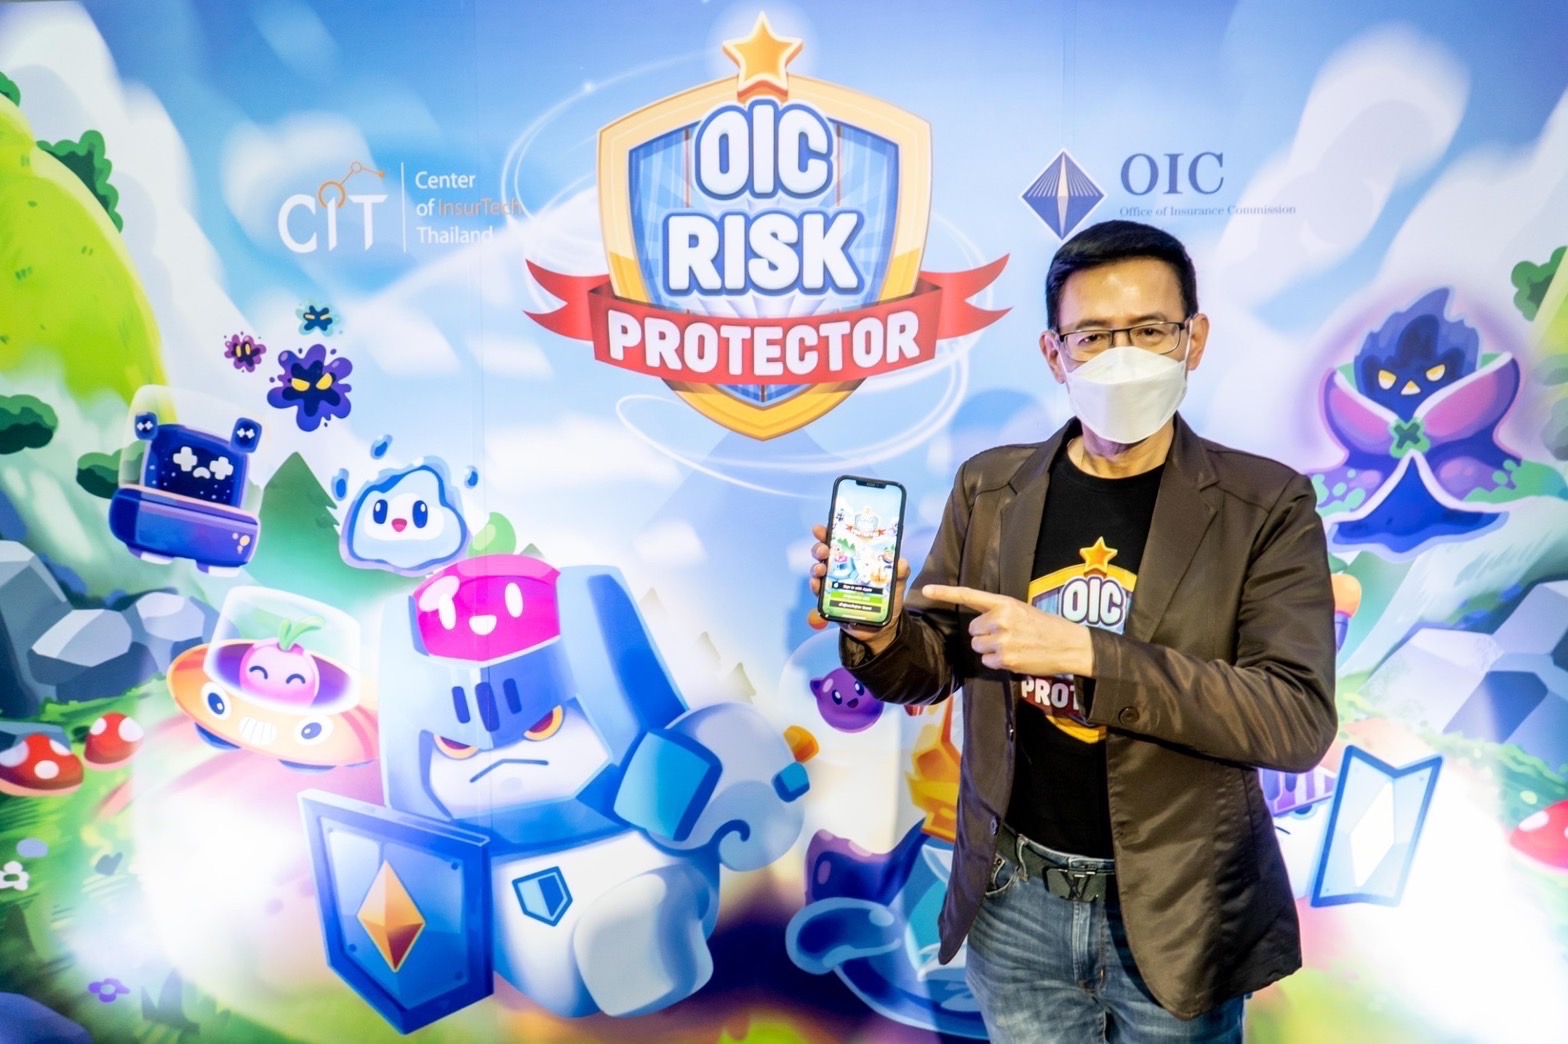 คปภ. เปิดนวัตกรรมใหม่ “Online Social Game” ด้านการประกันภัย ครั้งแรกของประเทศไทย